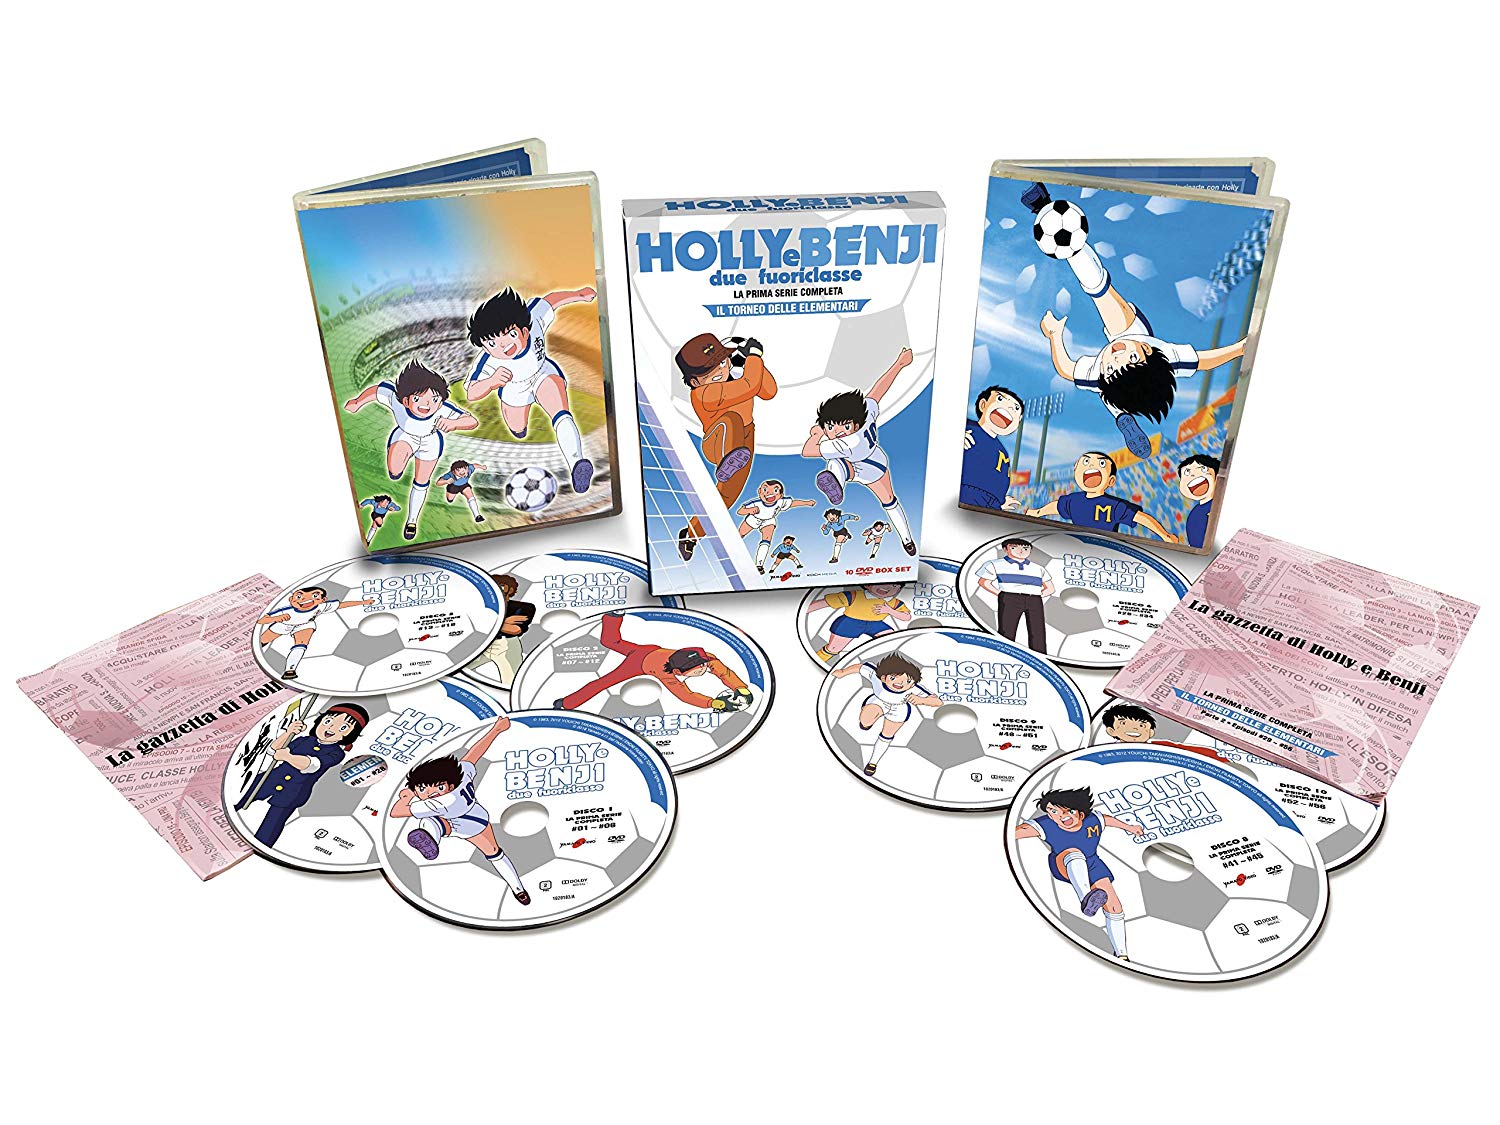 Holly e Benji due fuoriclasse torneo delle elementari serie 1 dvd amazon acquista online anime cartoni animati calcio